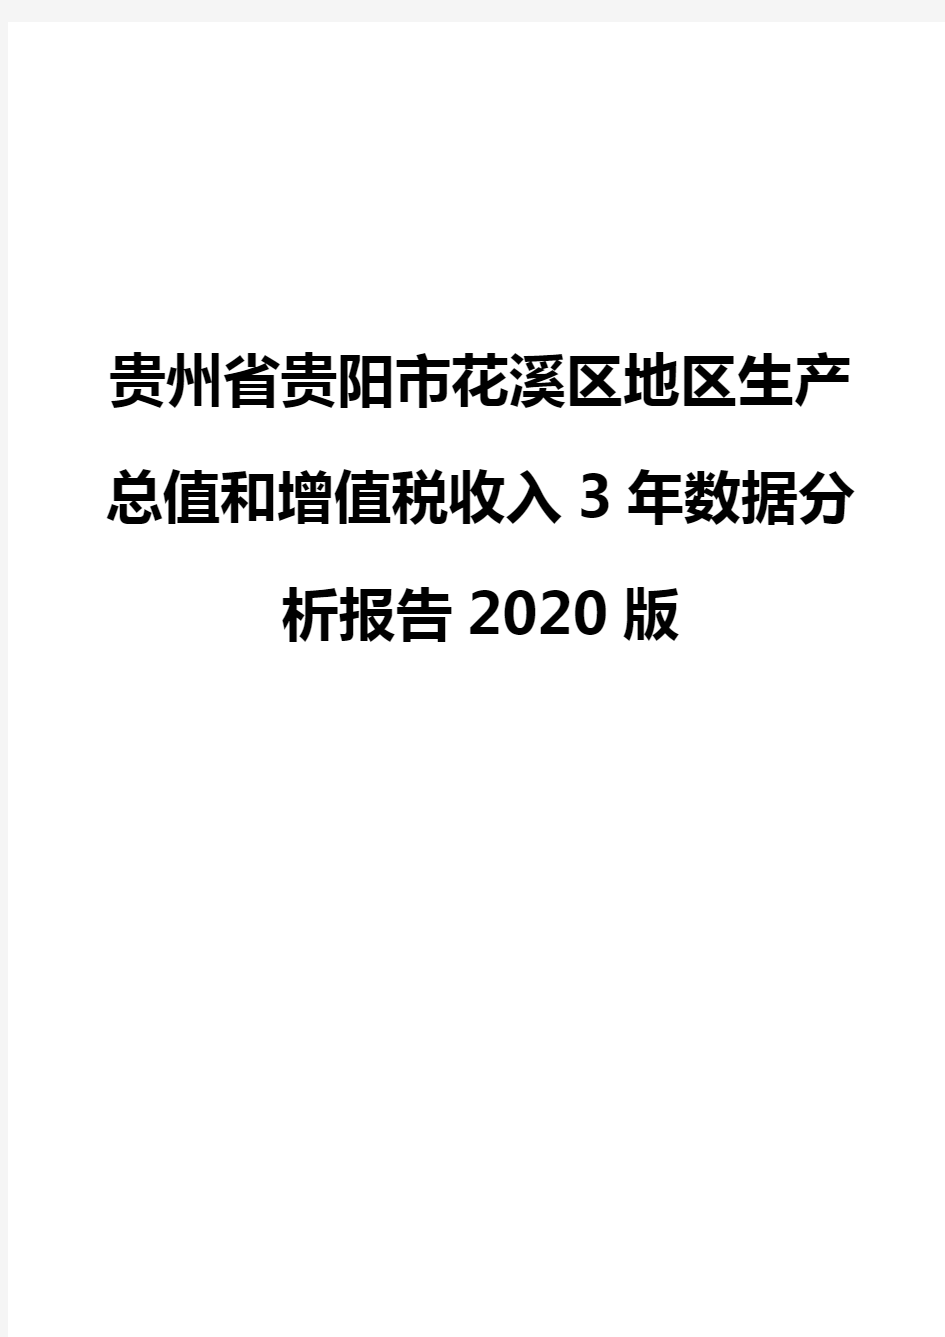 贵州省贵阳市花溪区地区生产总值和增值税收入3年数据分析报告2020版